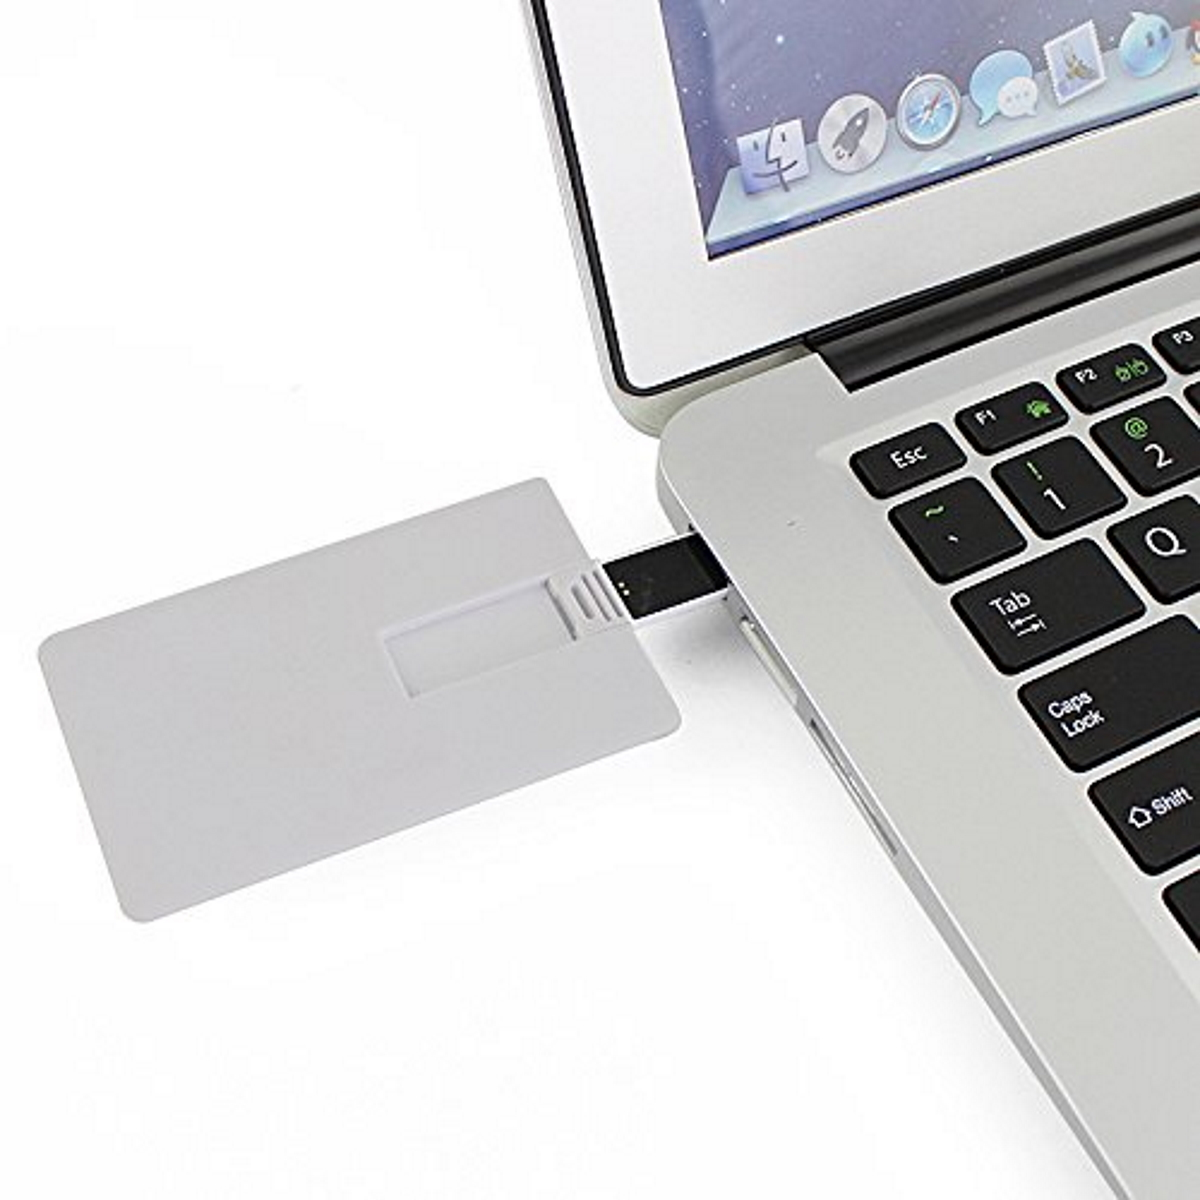 USB GERMANY (Weiss, Kreditkarte 4 ® GB) USB-Stick